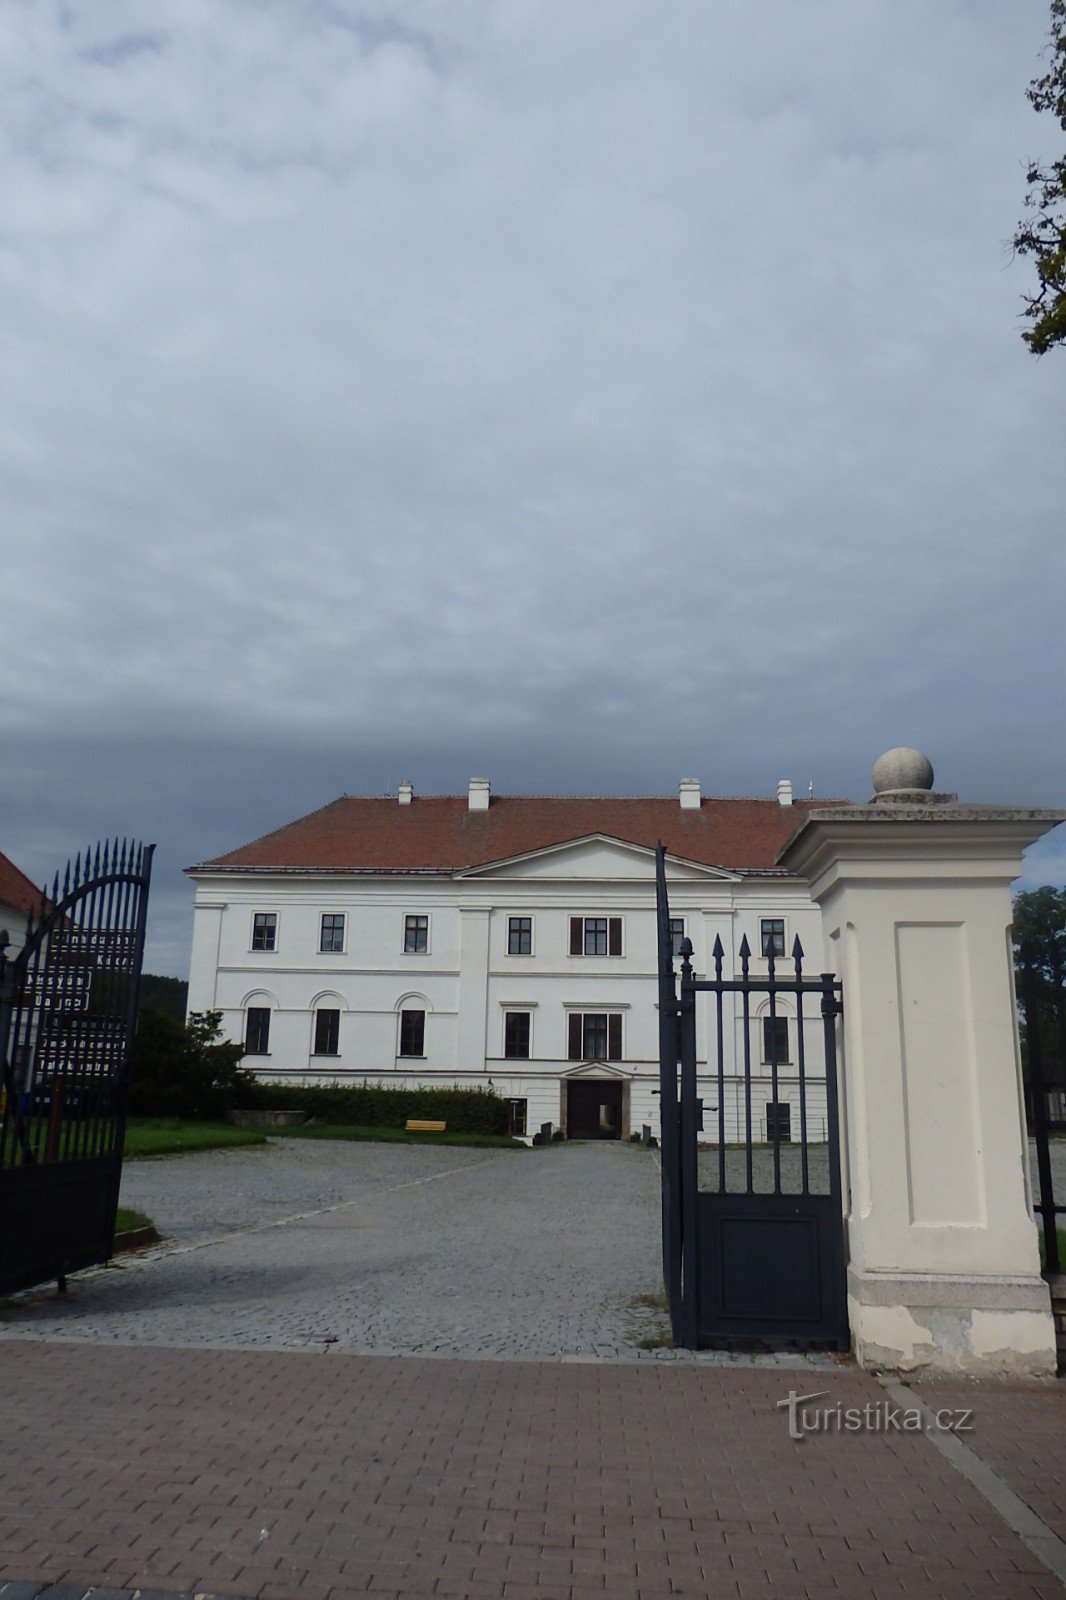 lâu đài ở Rosice gần Brno